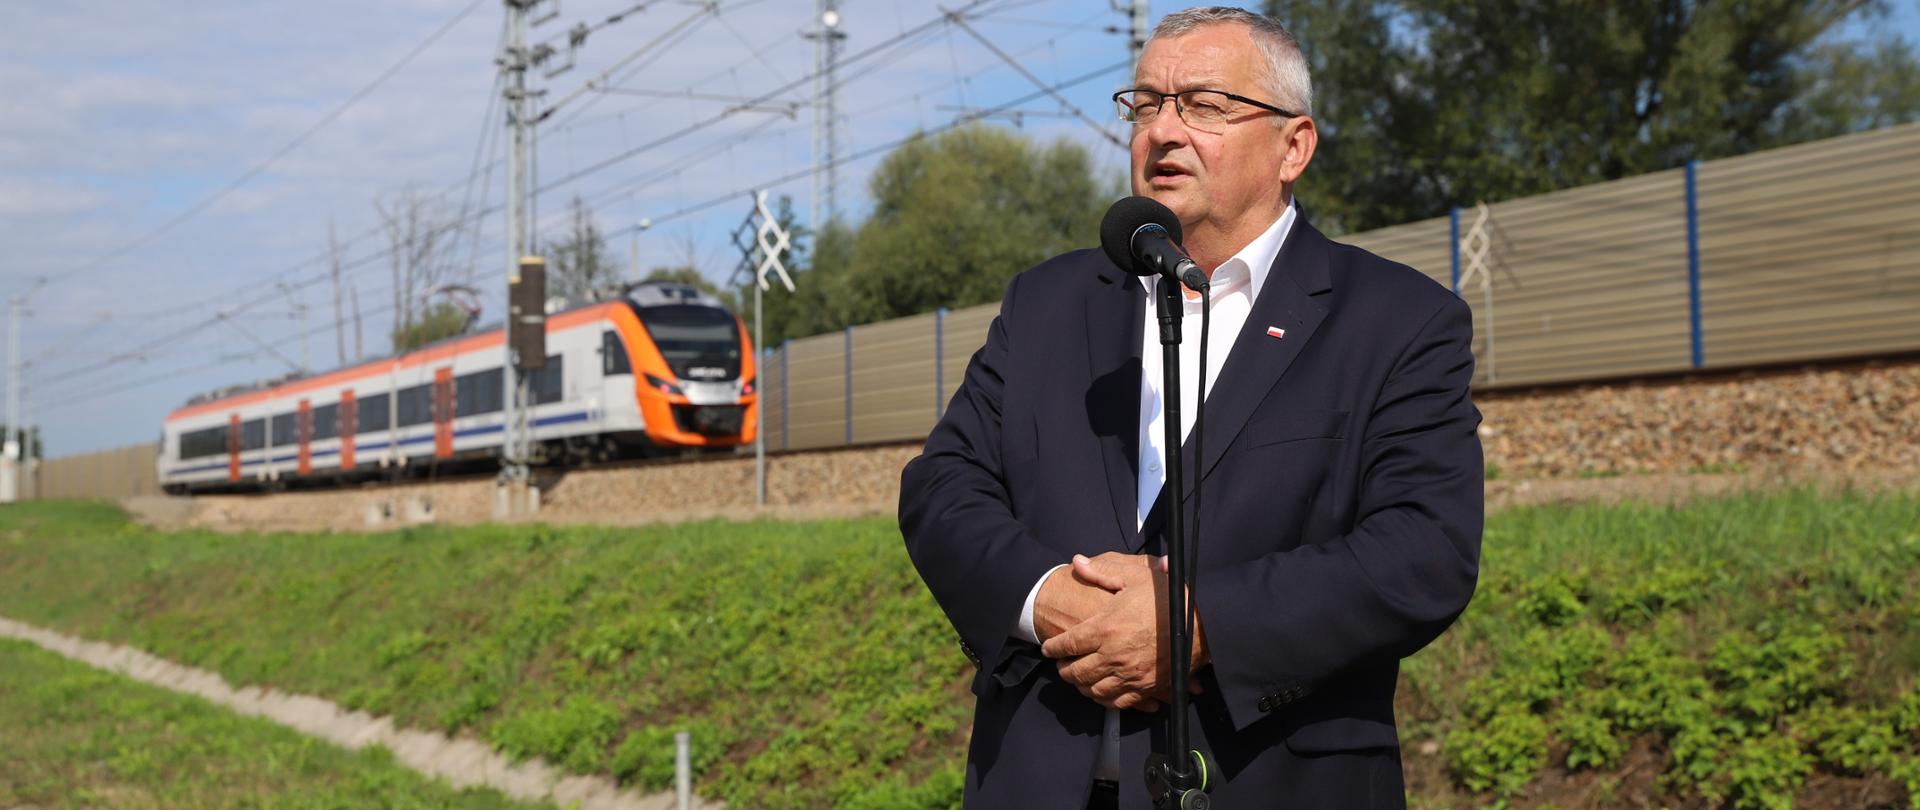 Minister infrastruktury Andrzej Adamczyk w trakcie konferencji prasowej dotyczącej podpisania umowy na budowę przystanku kolejowego w Pisarach